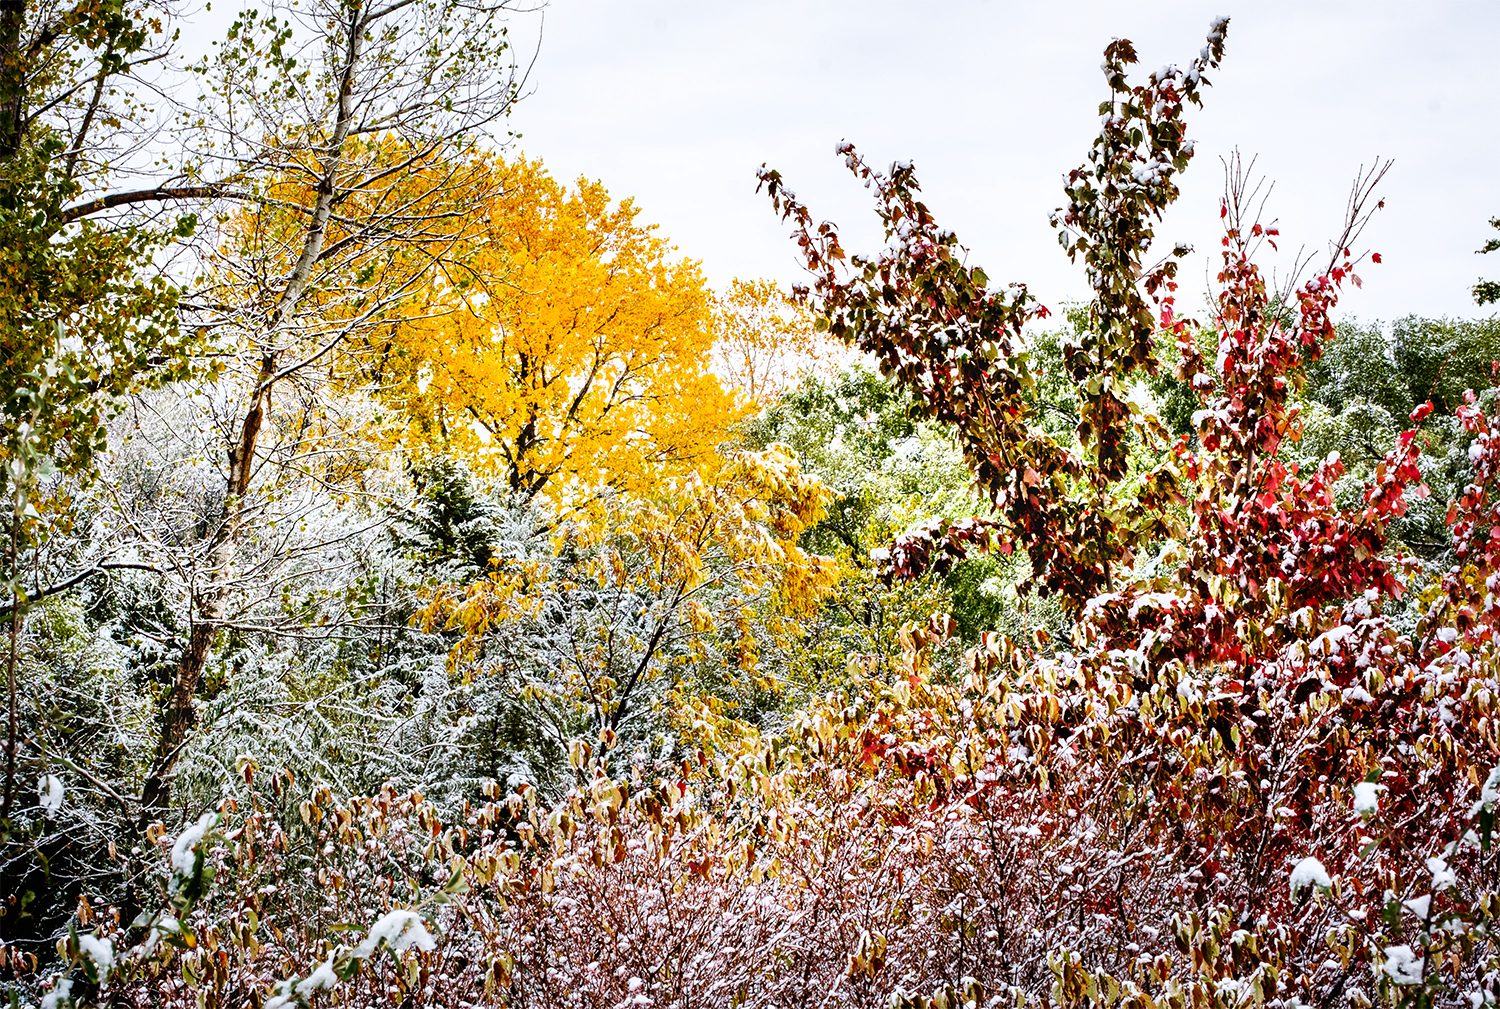 October snow at Black Elk-Neihardt Park